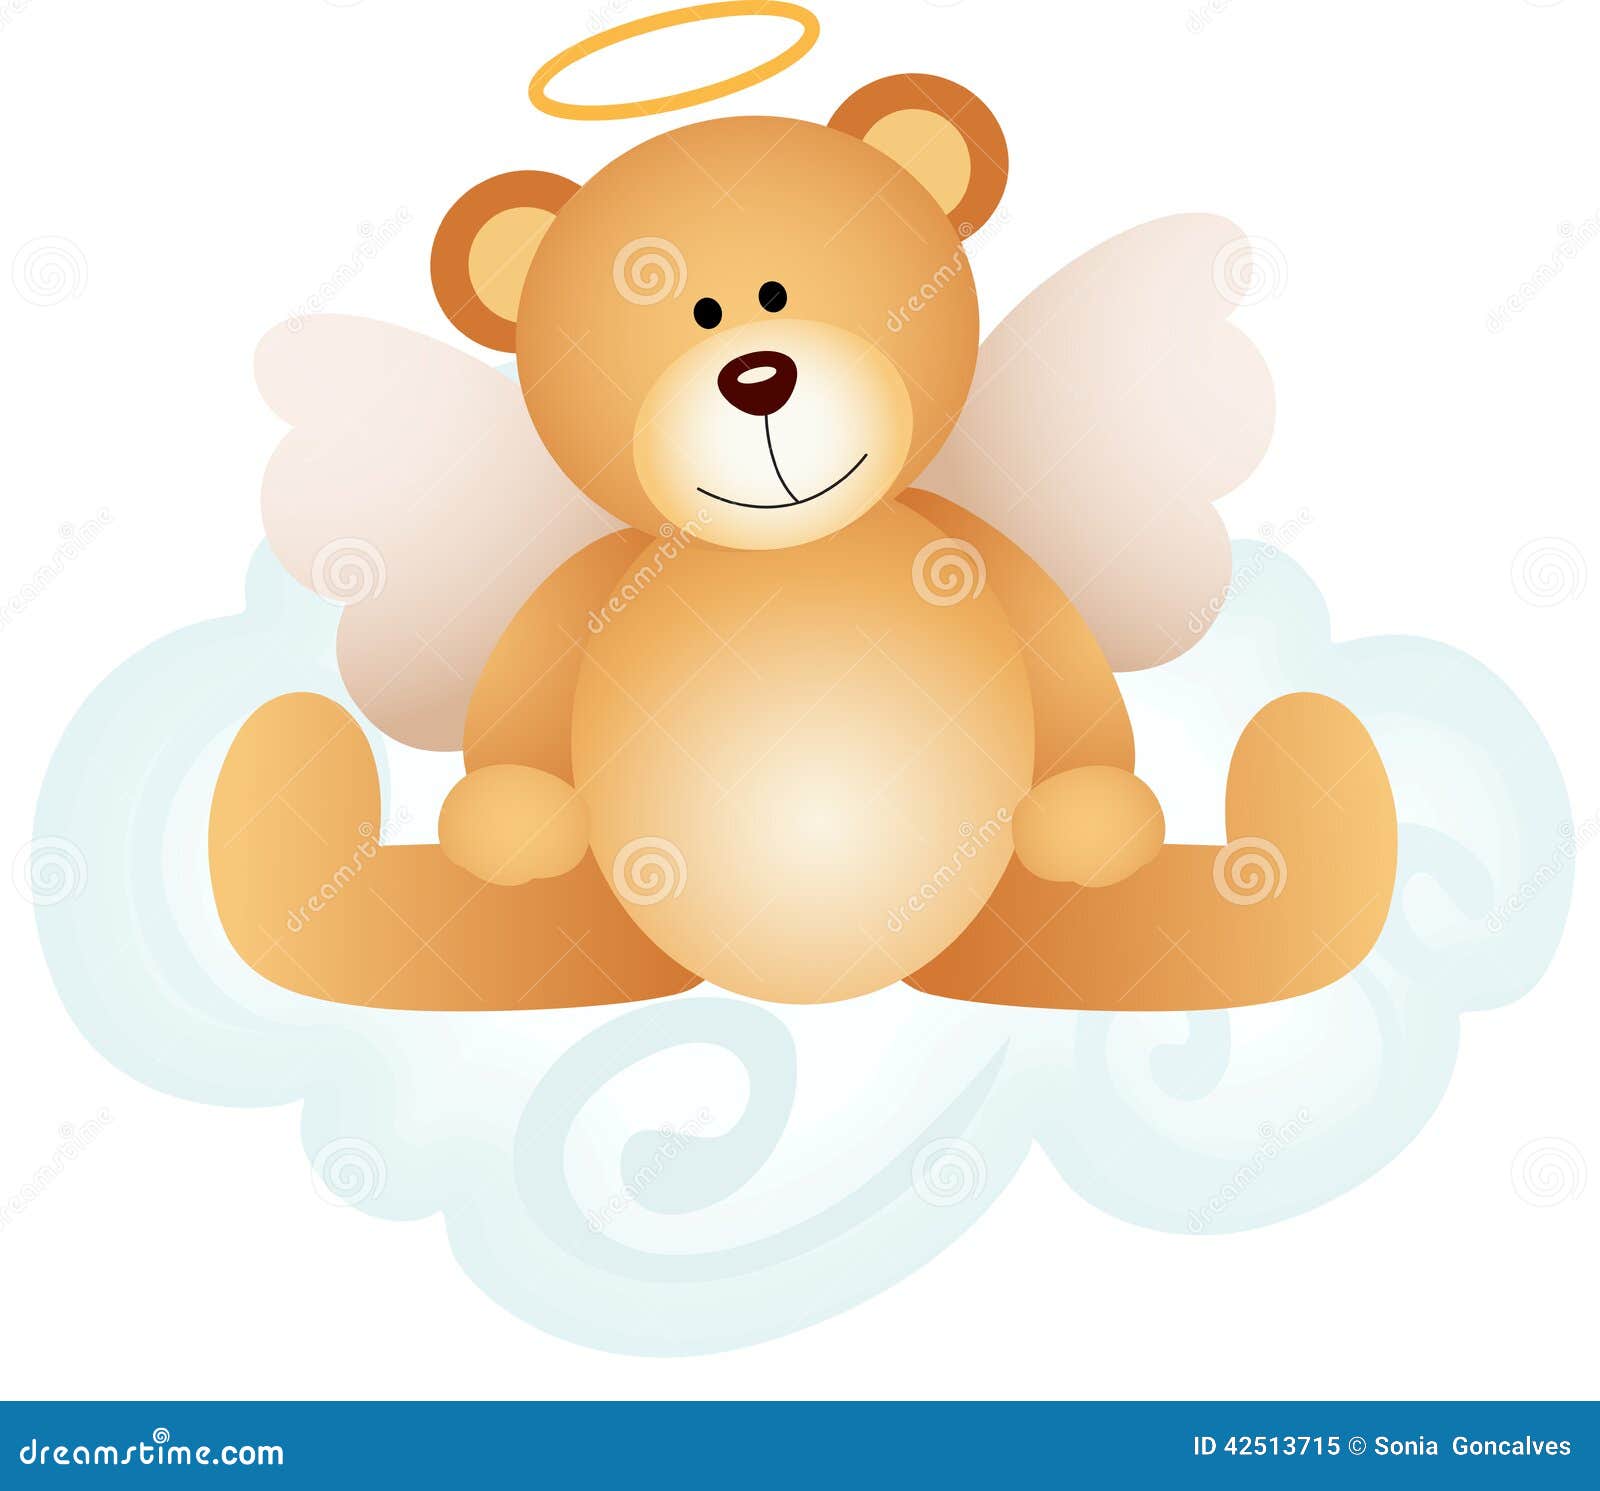 teddy bear angel clipart - photo #2